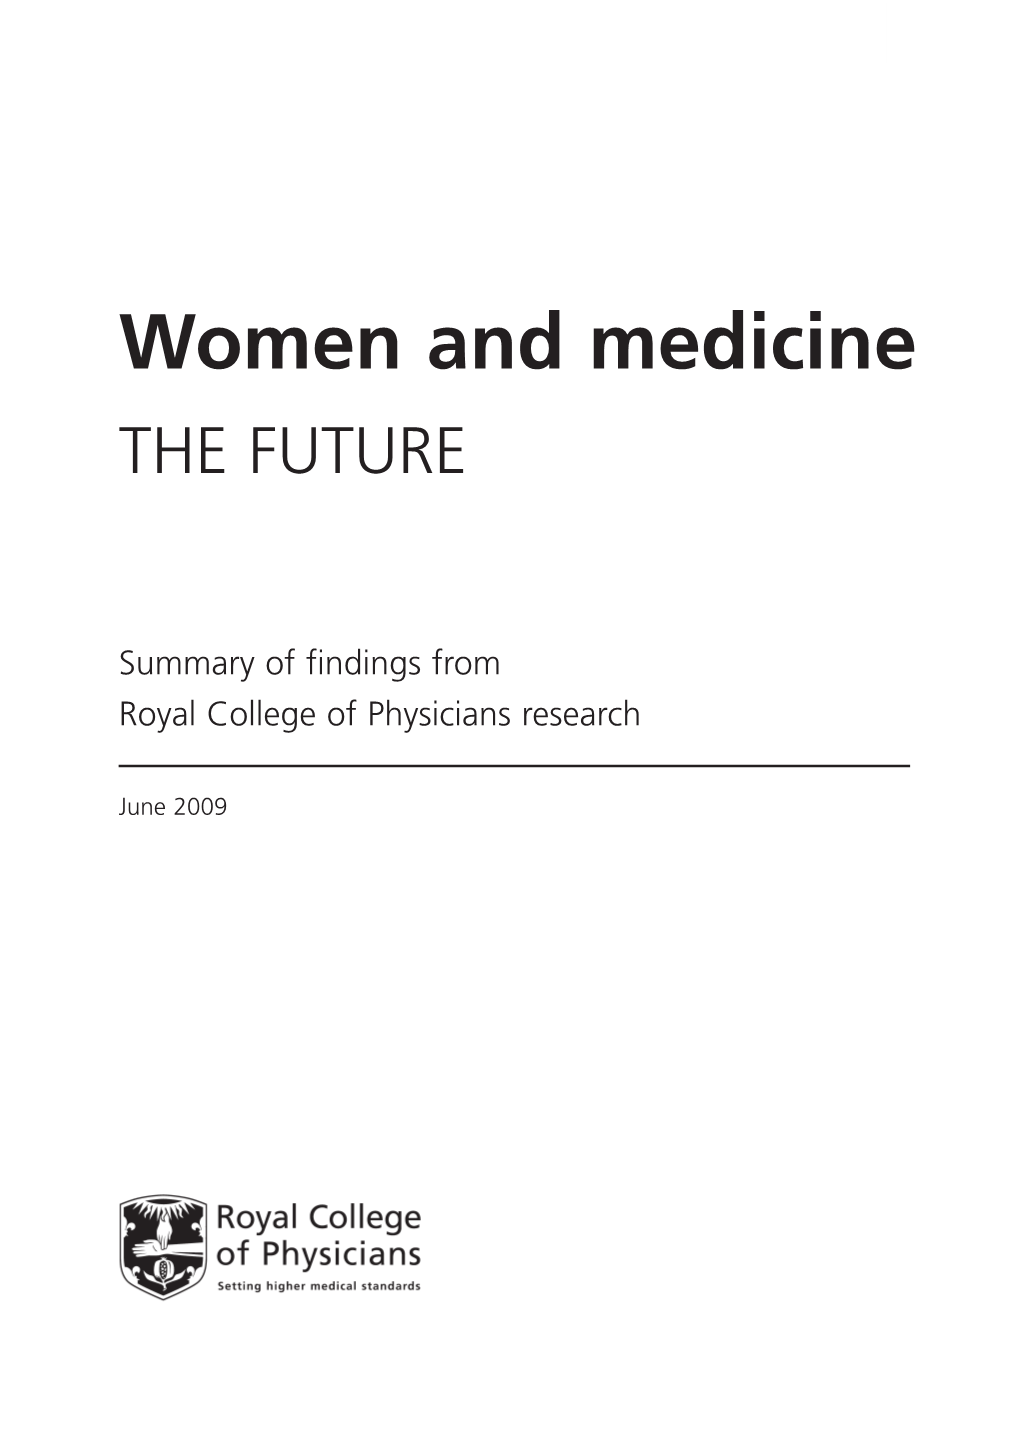 Women and Medicine the FUTURE